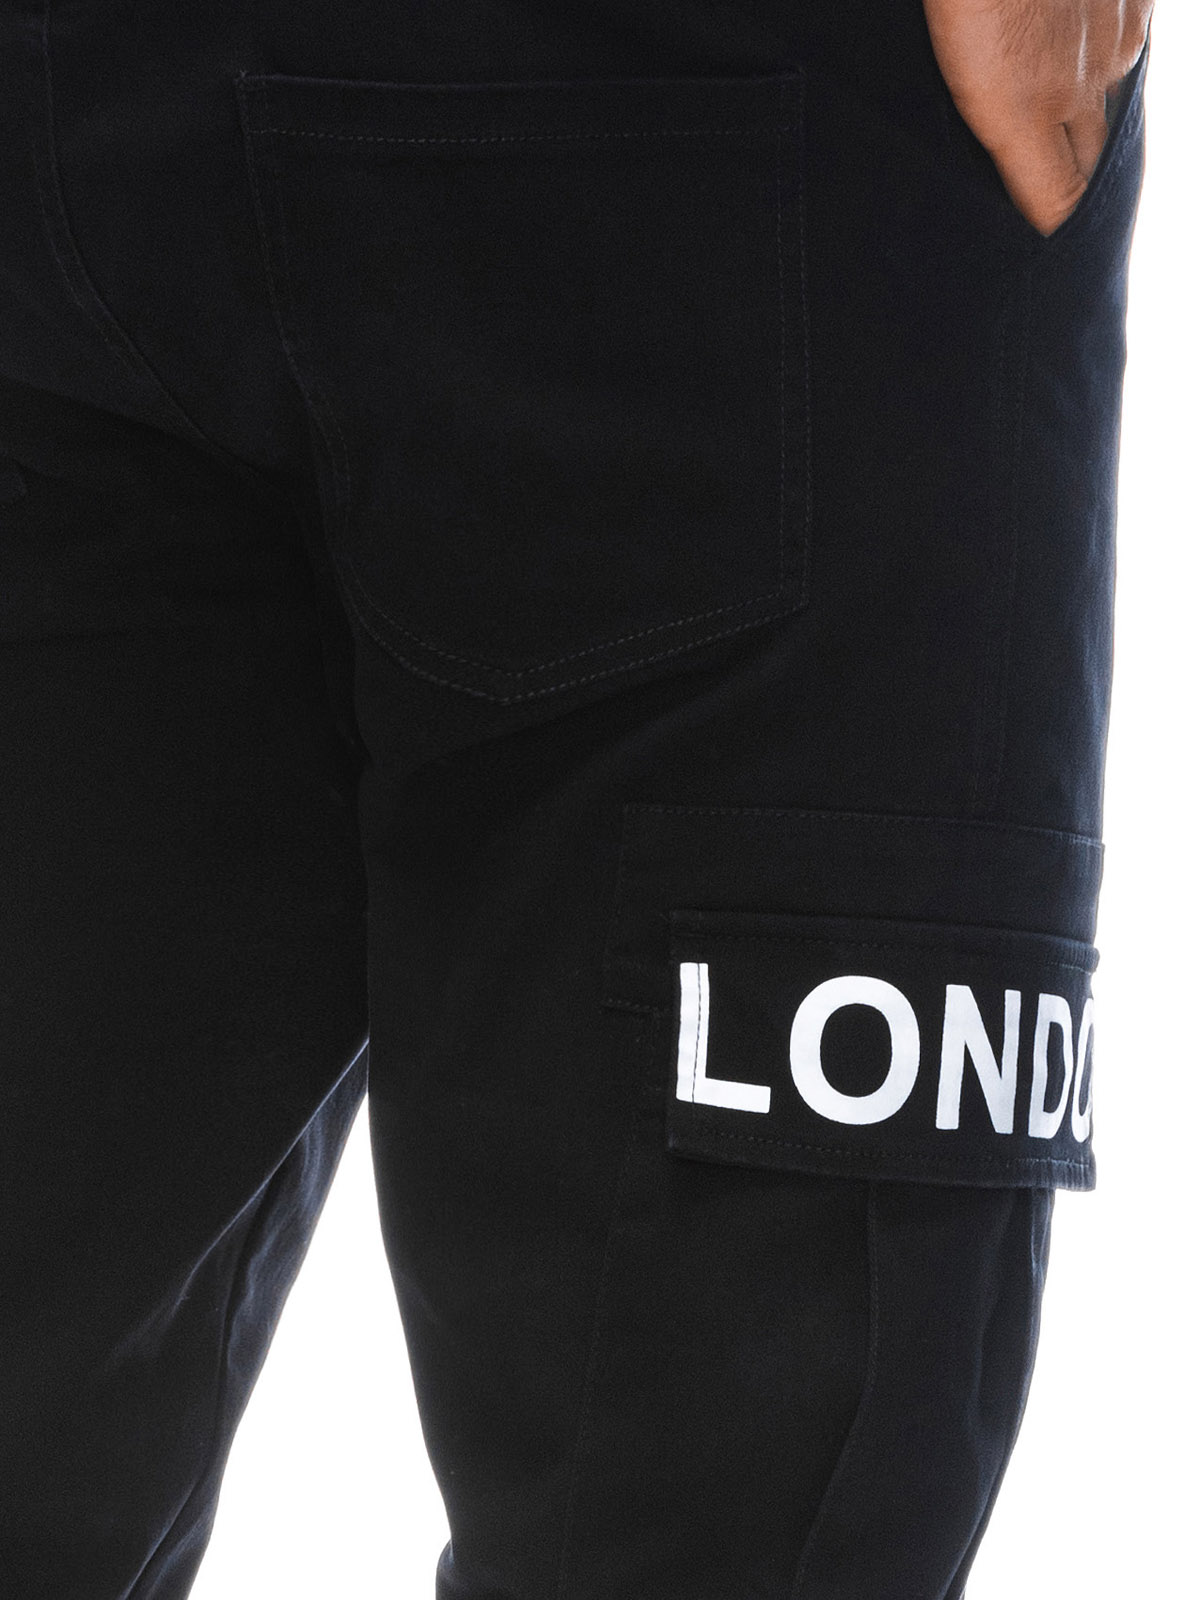 Men's cargo pants P1407 - black | MODONE wholesale - Clothing For Men